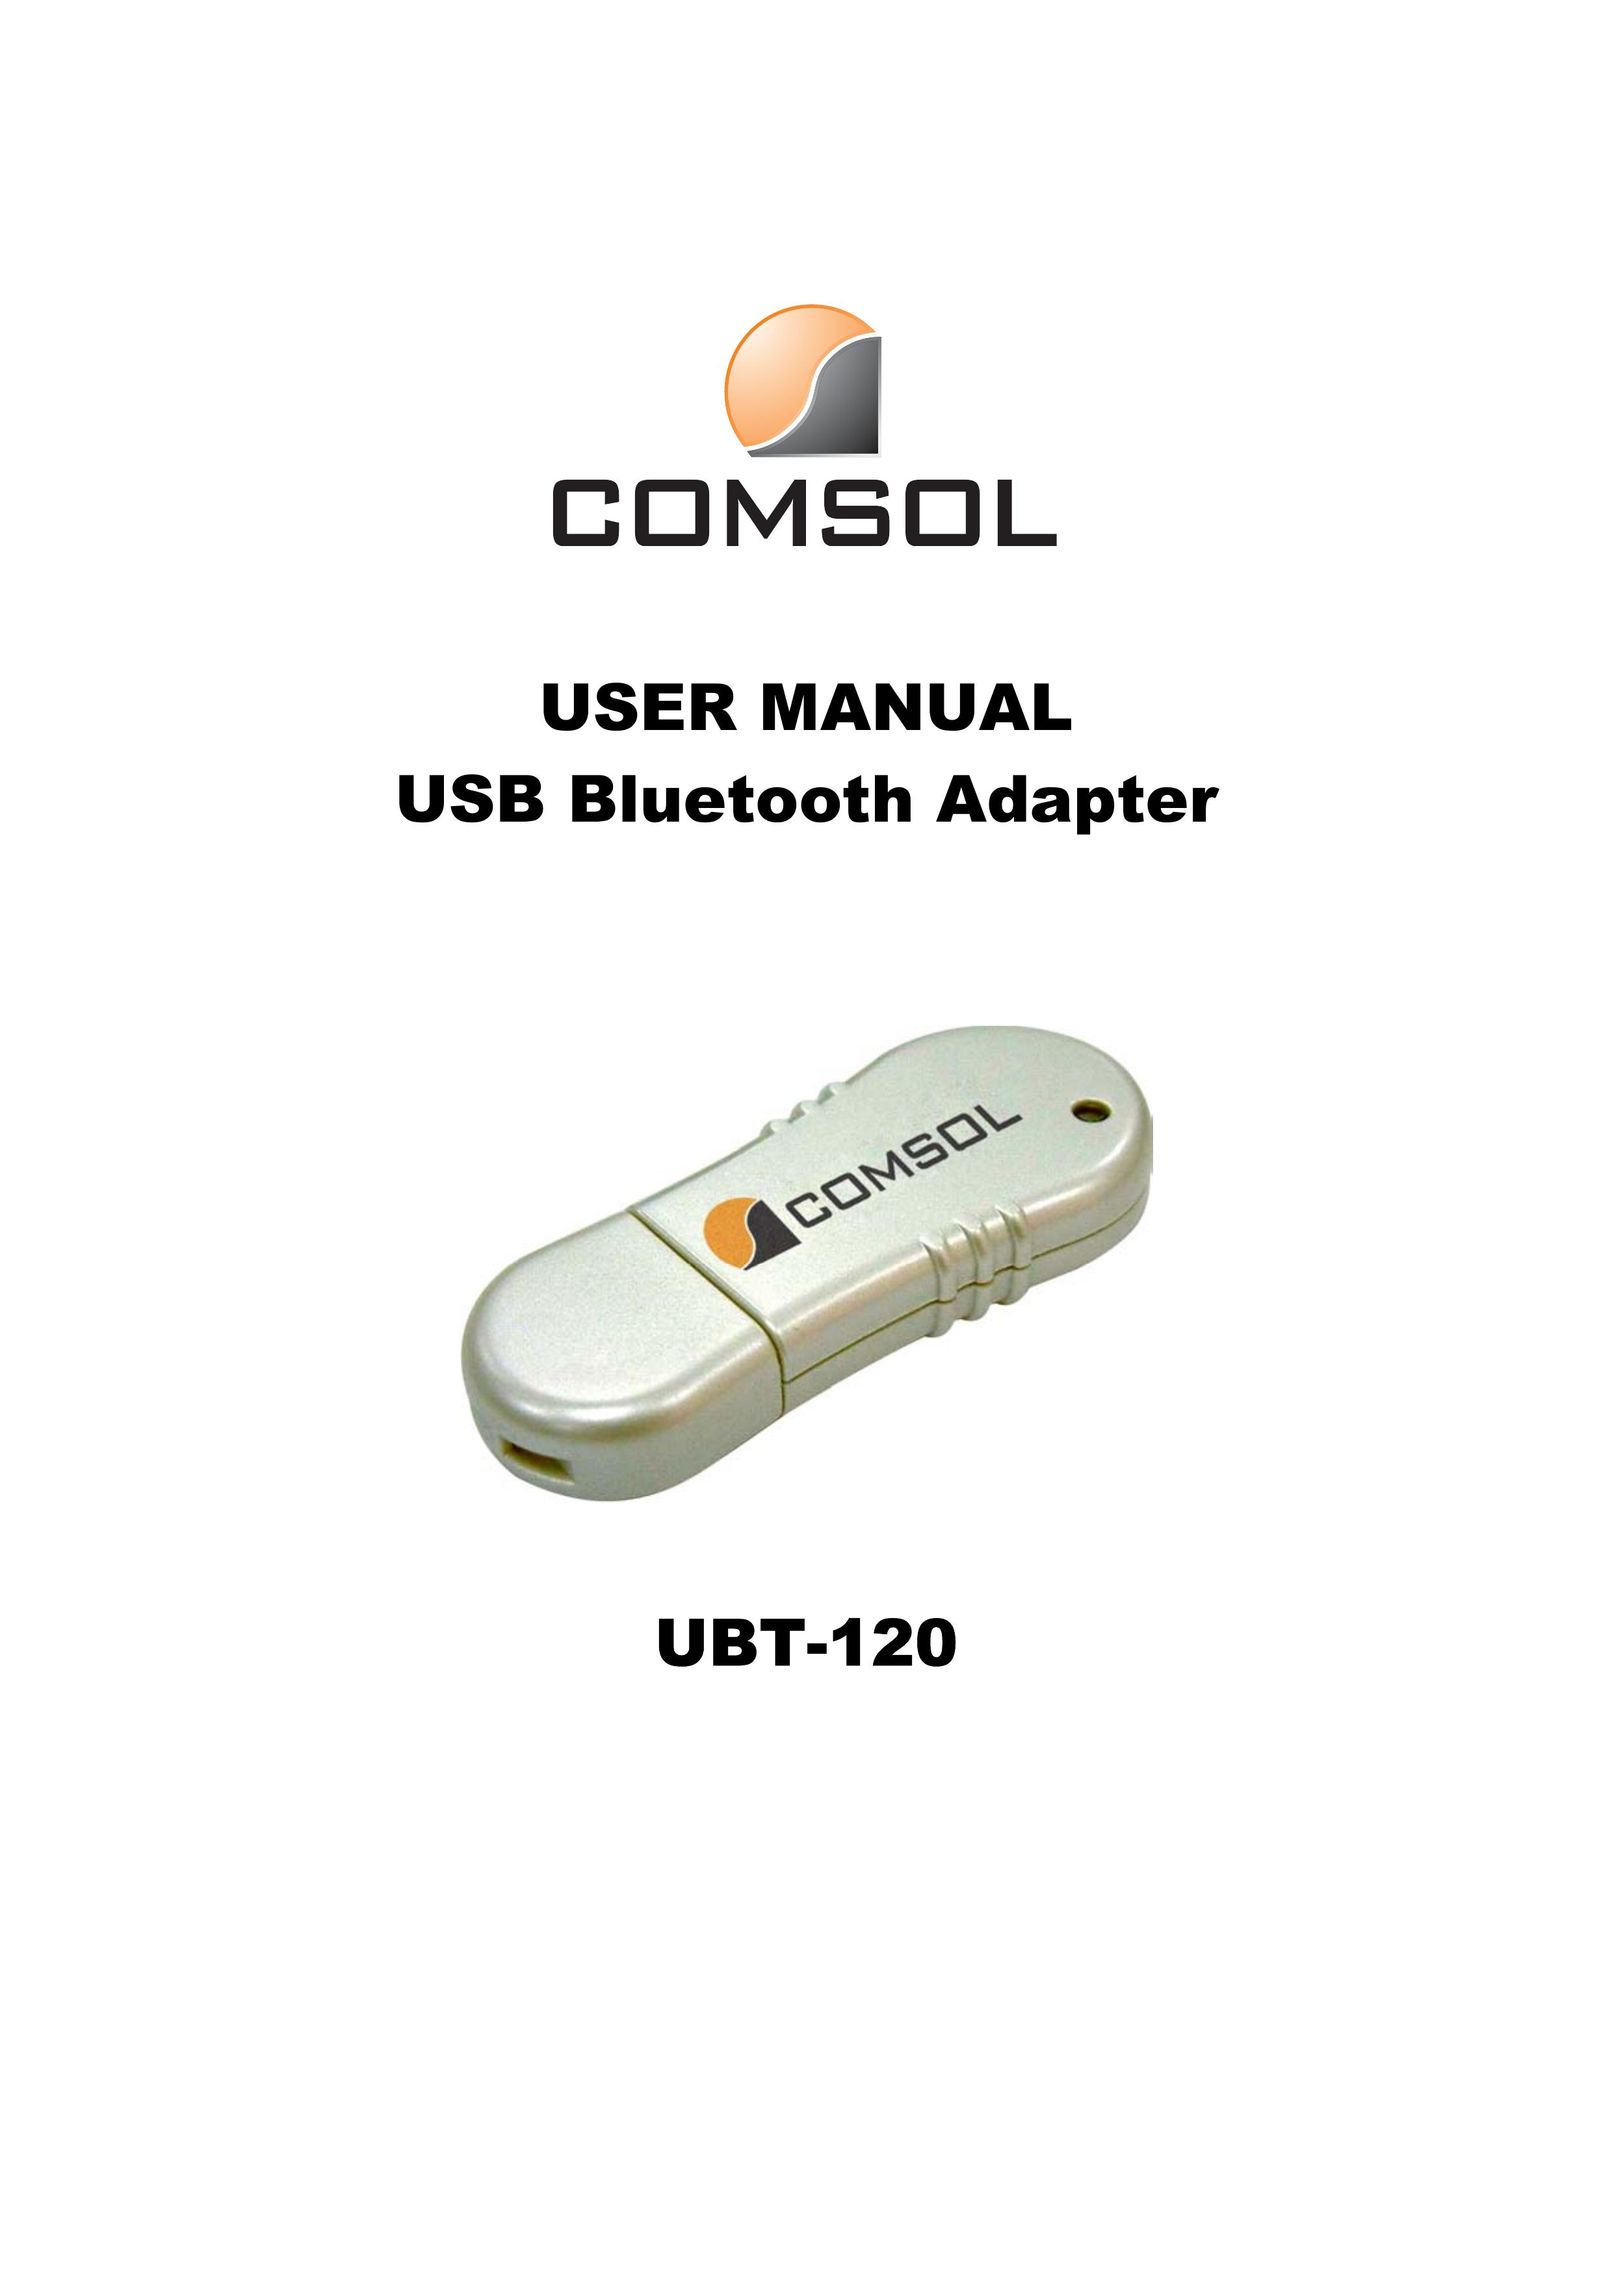 COMSOL UBT-120 Network Card User Manual